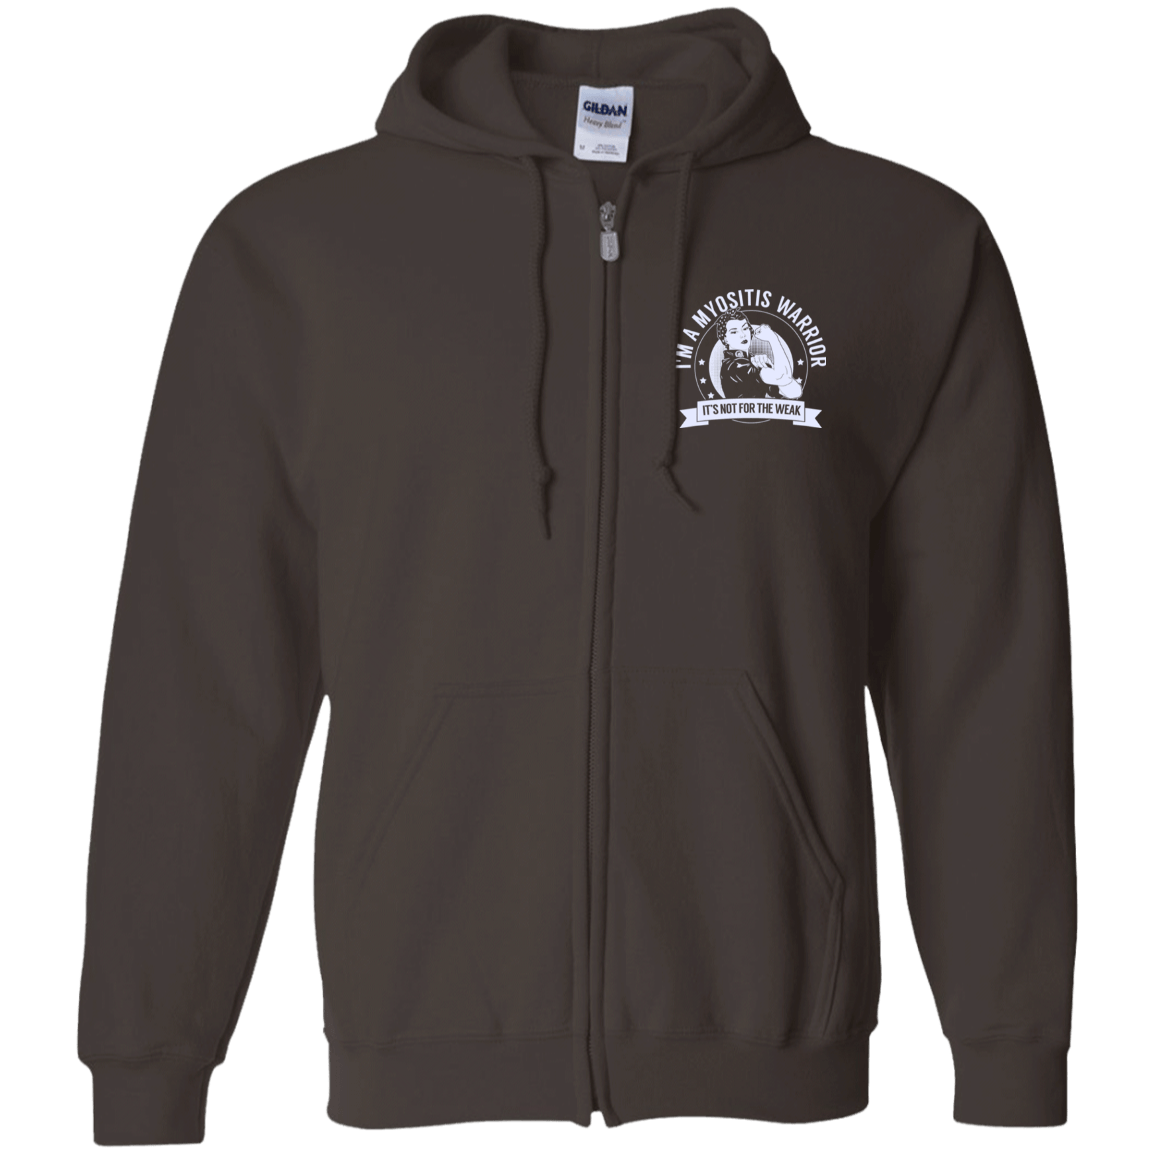 Myositis Warrior NFTW Zip Up Hooded Sweatshirt - The Unchargeables